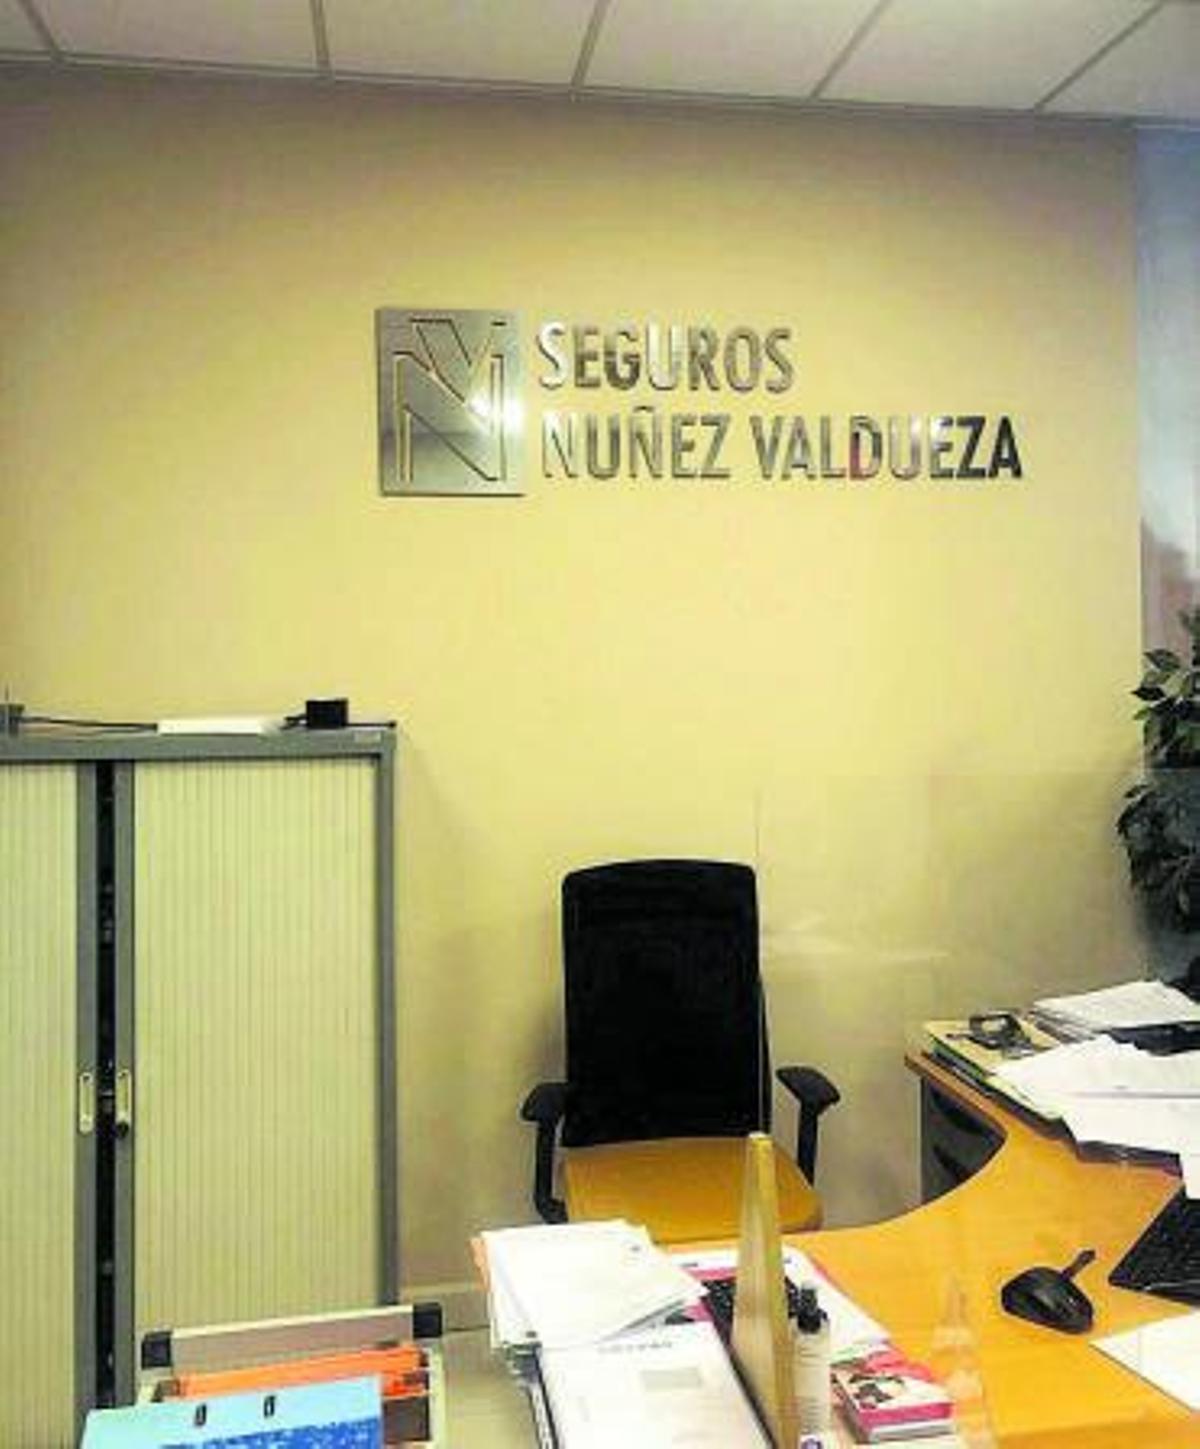 Seguros Núñez Valdueza, la salud y el ahorro a disposición de sus clientes